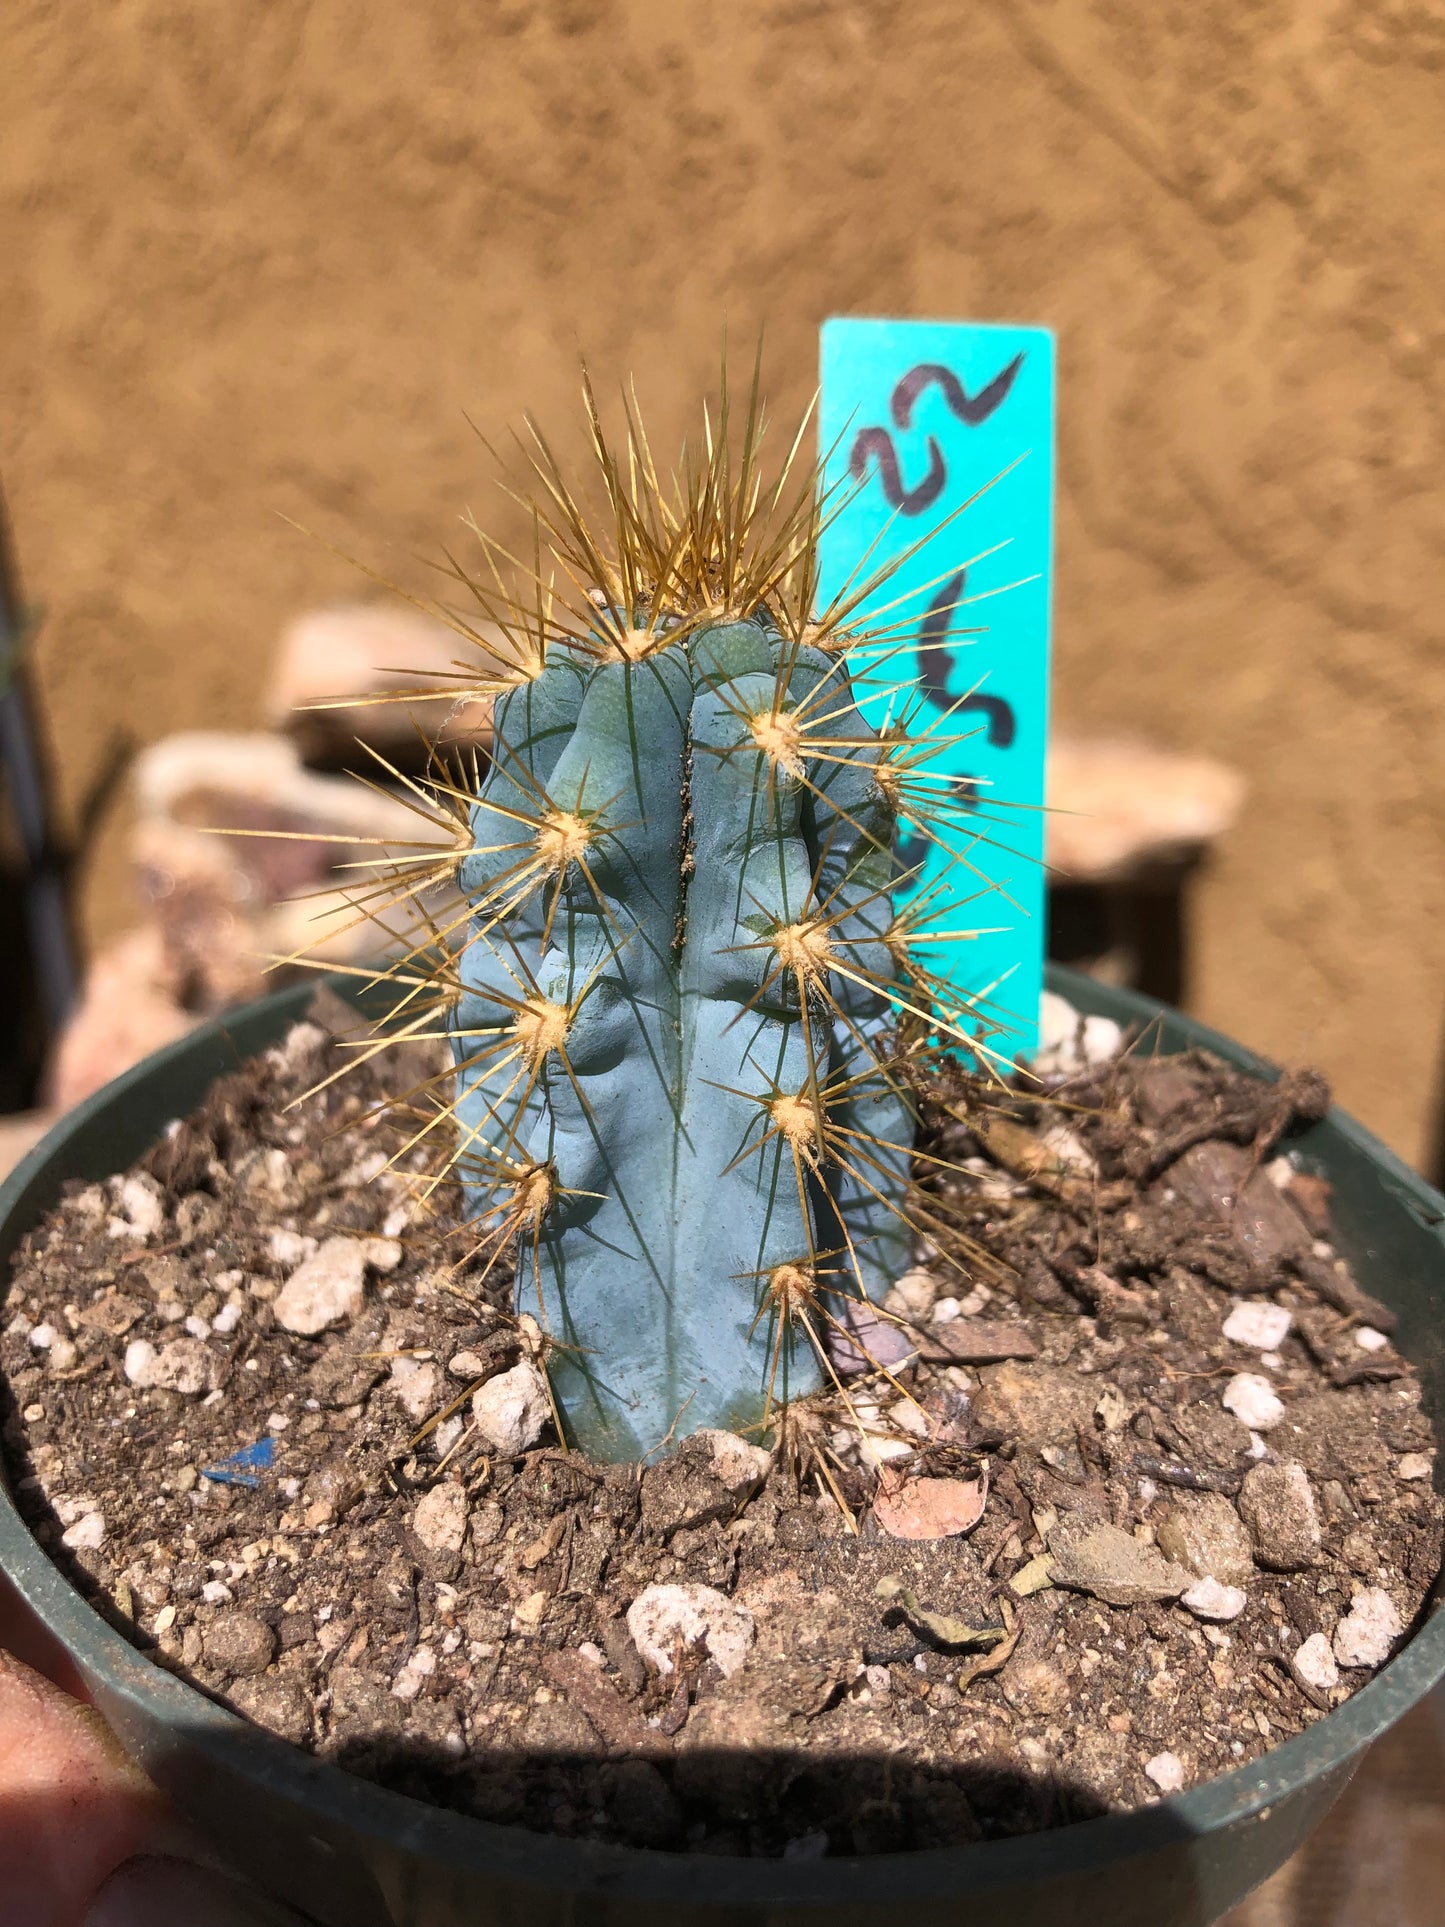 Pilosocereus Blue Azureus Cactus 2.5"Tall #22G